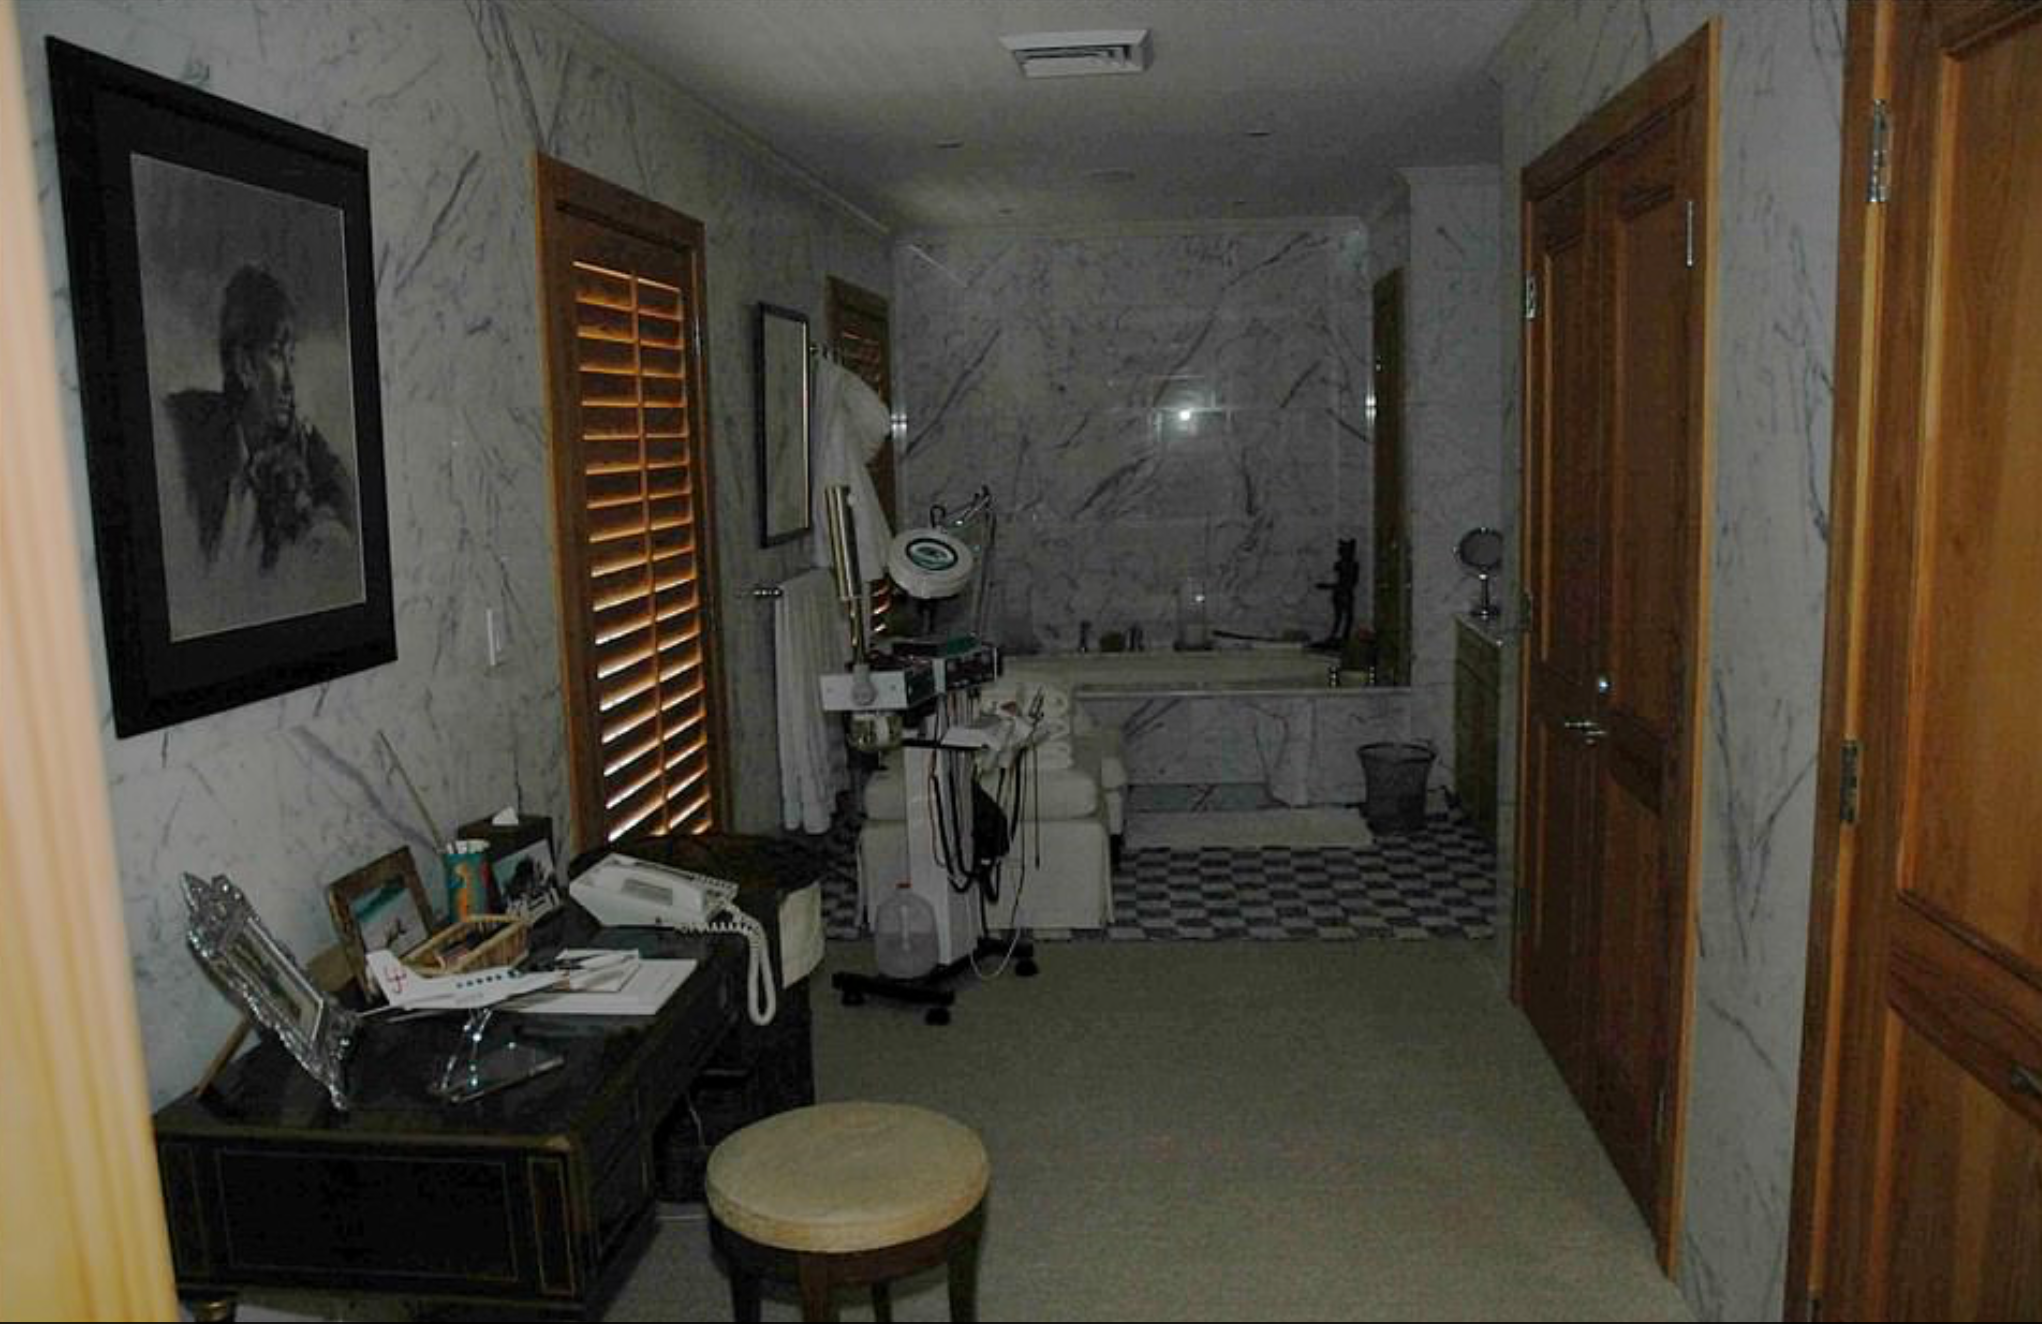 Los fiscales del juicio por tráfico sexual de menores de Ghislaine Maxwell presentaron decenas de imágenes la mansión de Palm Beach de Epstein tomadas por el FBI durante una redada en 2005